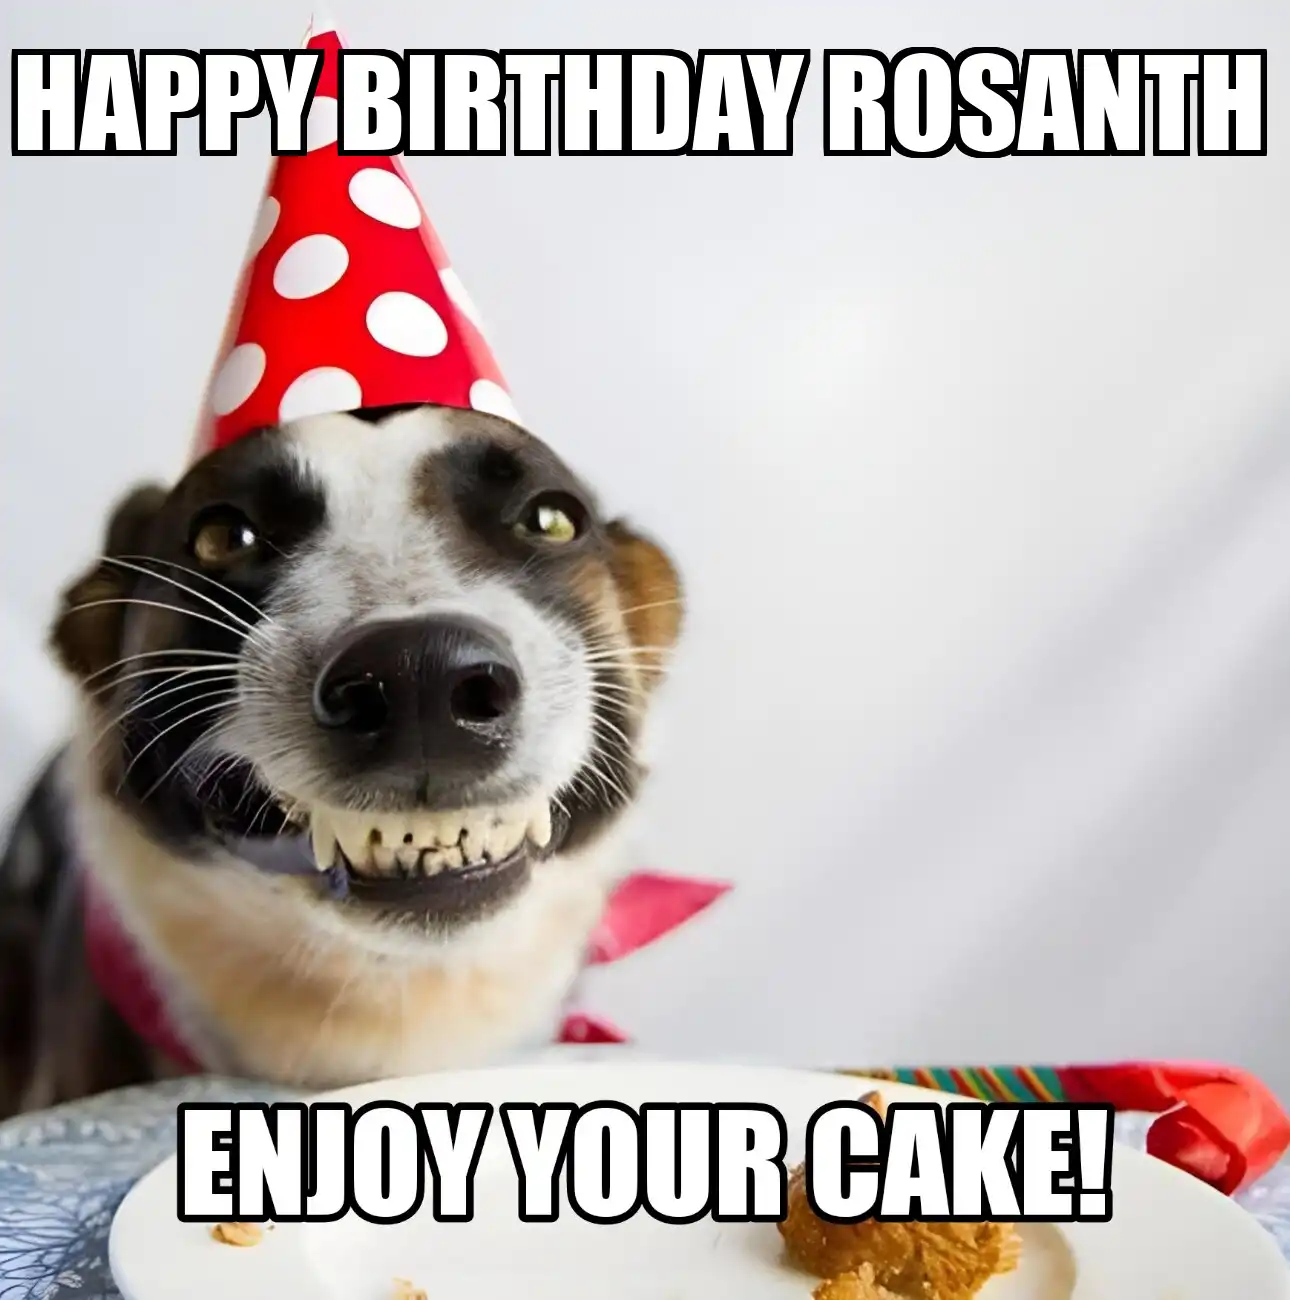 Happy Birthday Rosanth Enjoy Your Cake Dog Meme